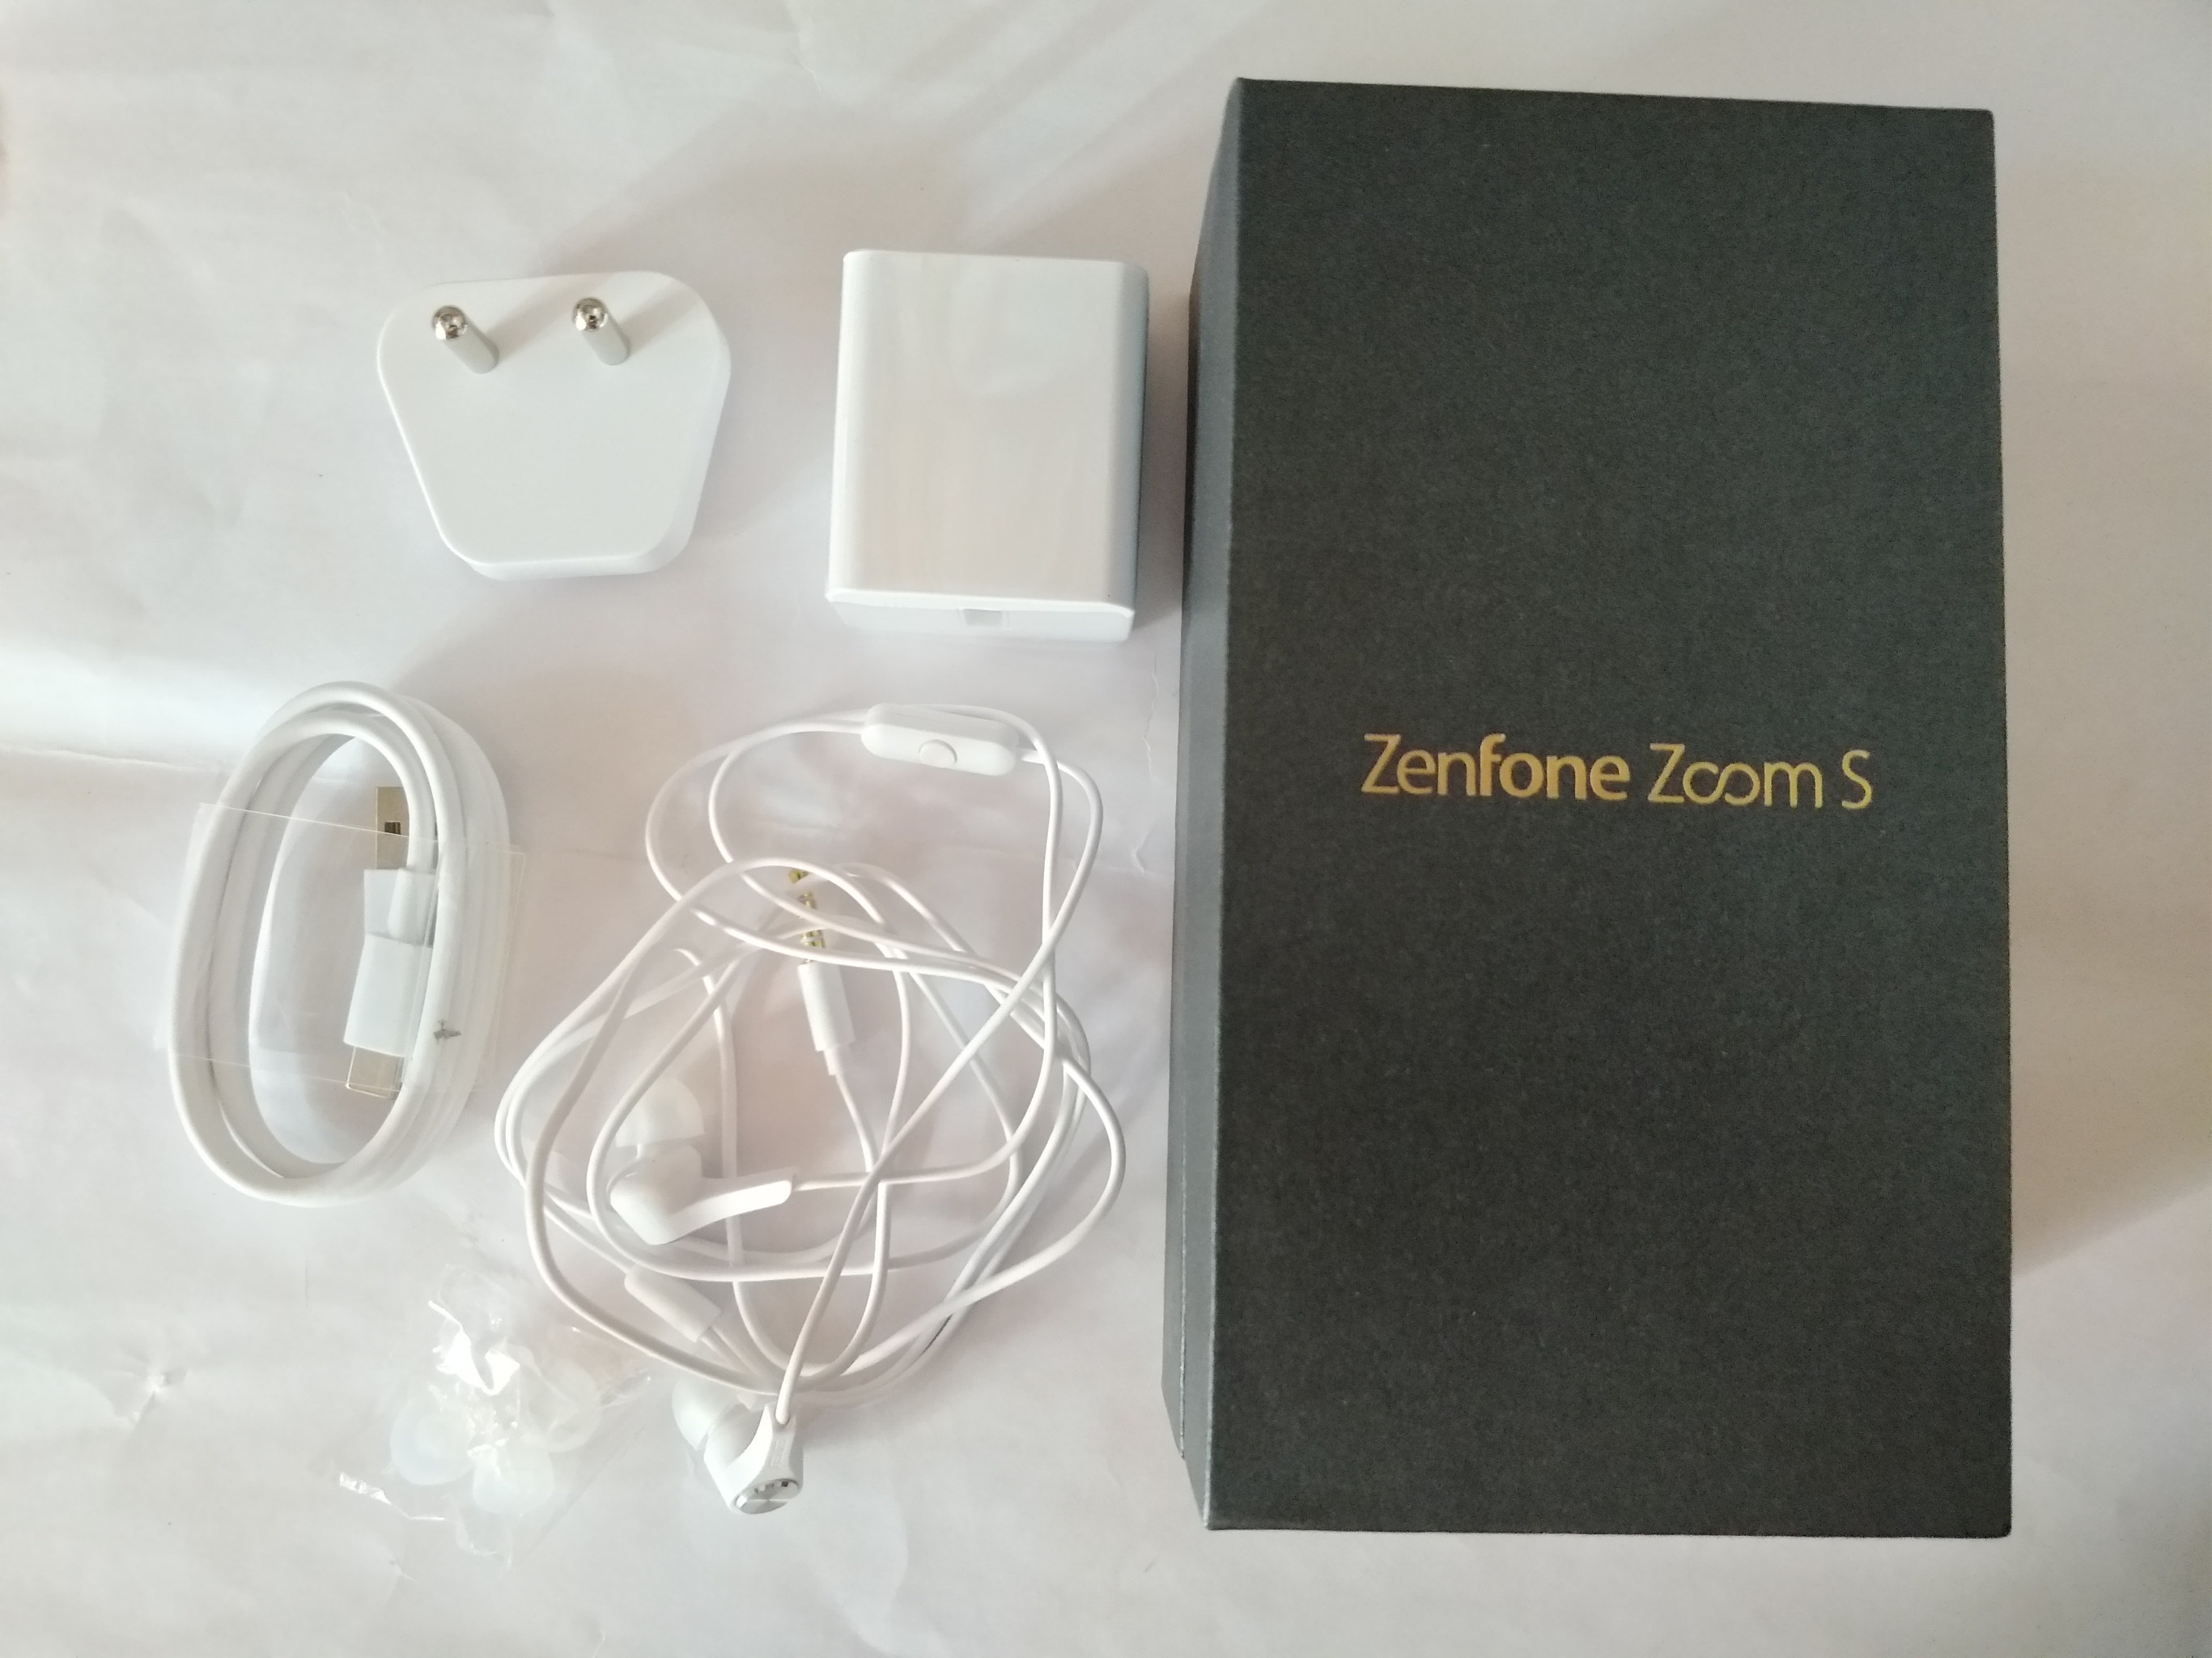 ASUS ZenFone 3 Zoom (ZE553KL) sample photo. Asus zenfone zoom s photography